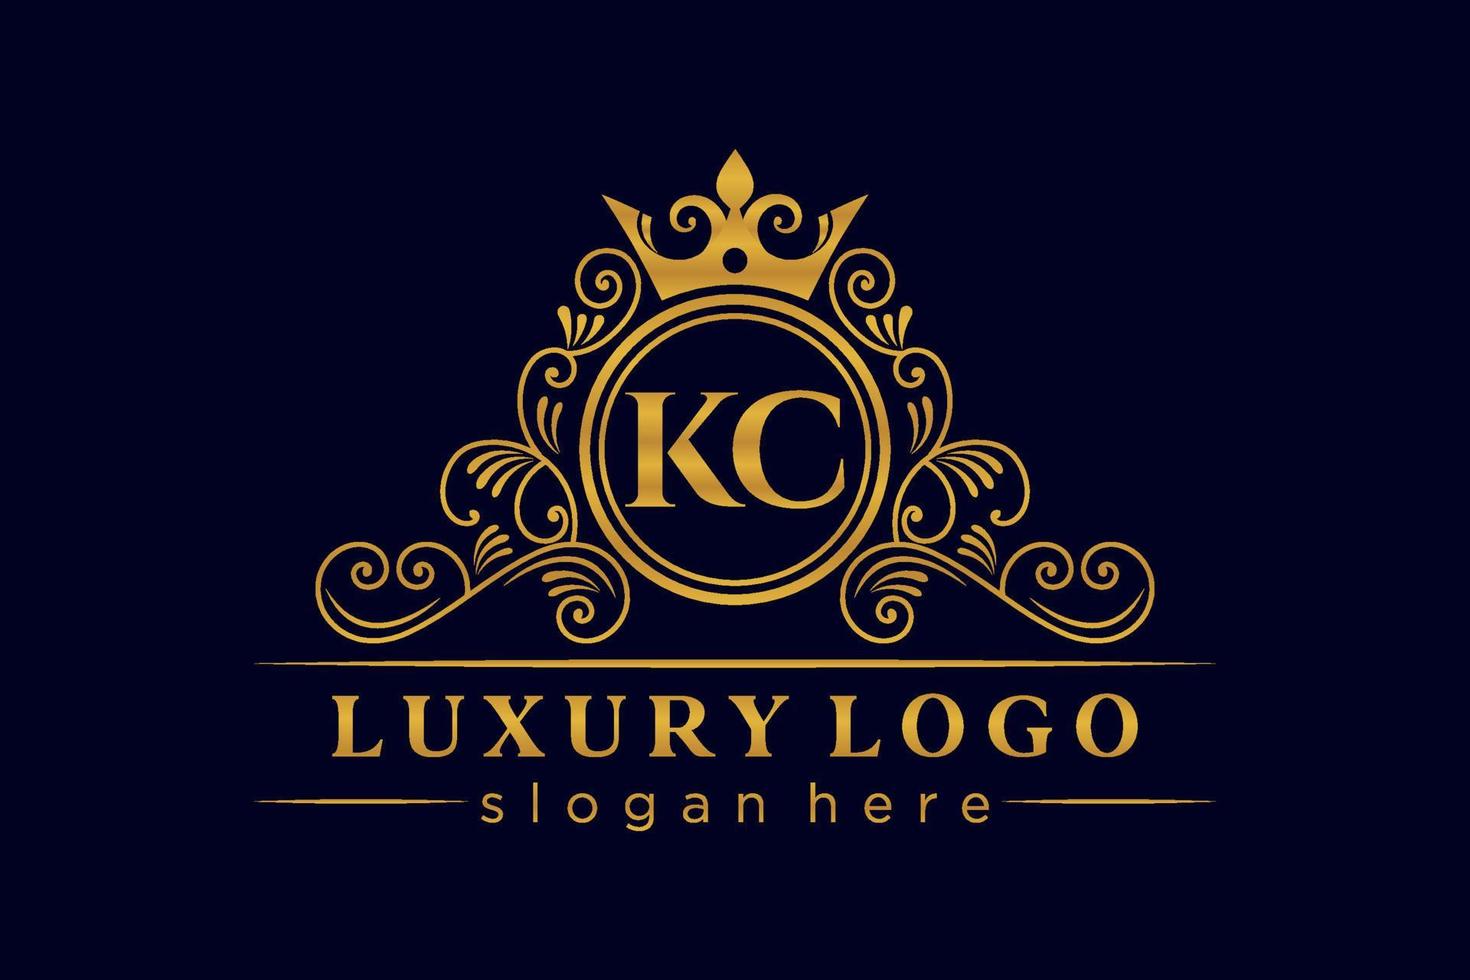 KC Initial Letter Gold calligraphic feminine floral hand drawn heraldic monogram antique vintage style luxury logo design Premium Vector